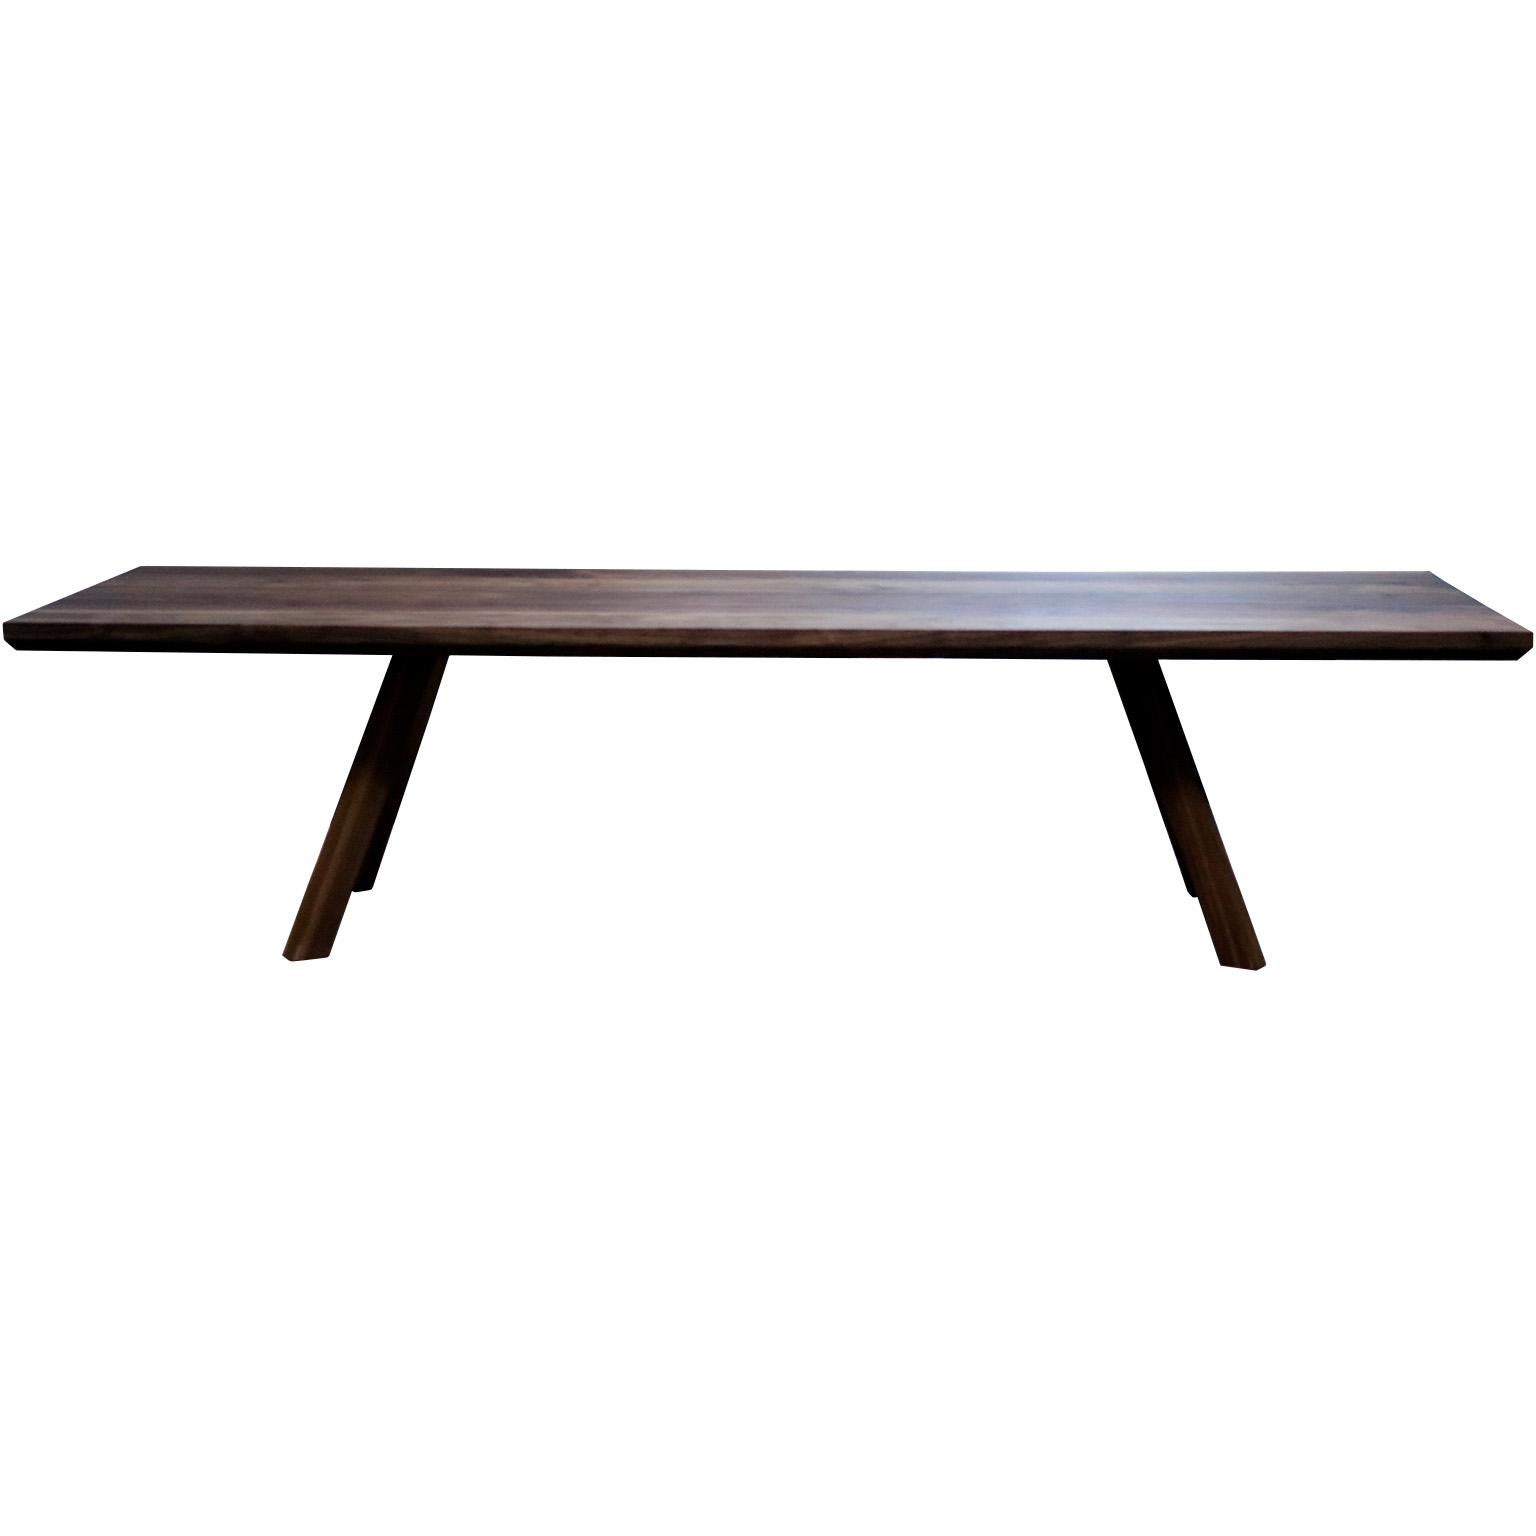 La table basse Apate est fabriquée en bois de noyer massif.  Les lignes de vue sont simples, géométriques et élégantes.  Un bel équilibre entre la forme architrcurale et la variation organique des veines du bois.  Cette table sera à coup sûr une